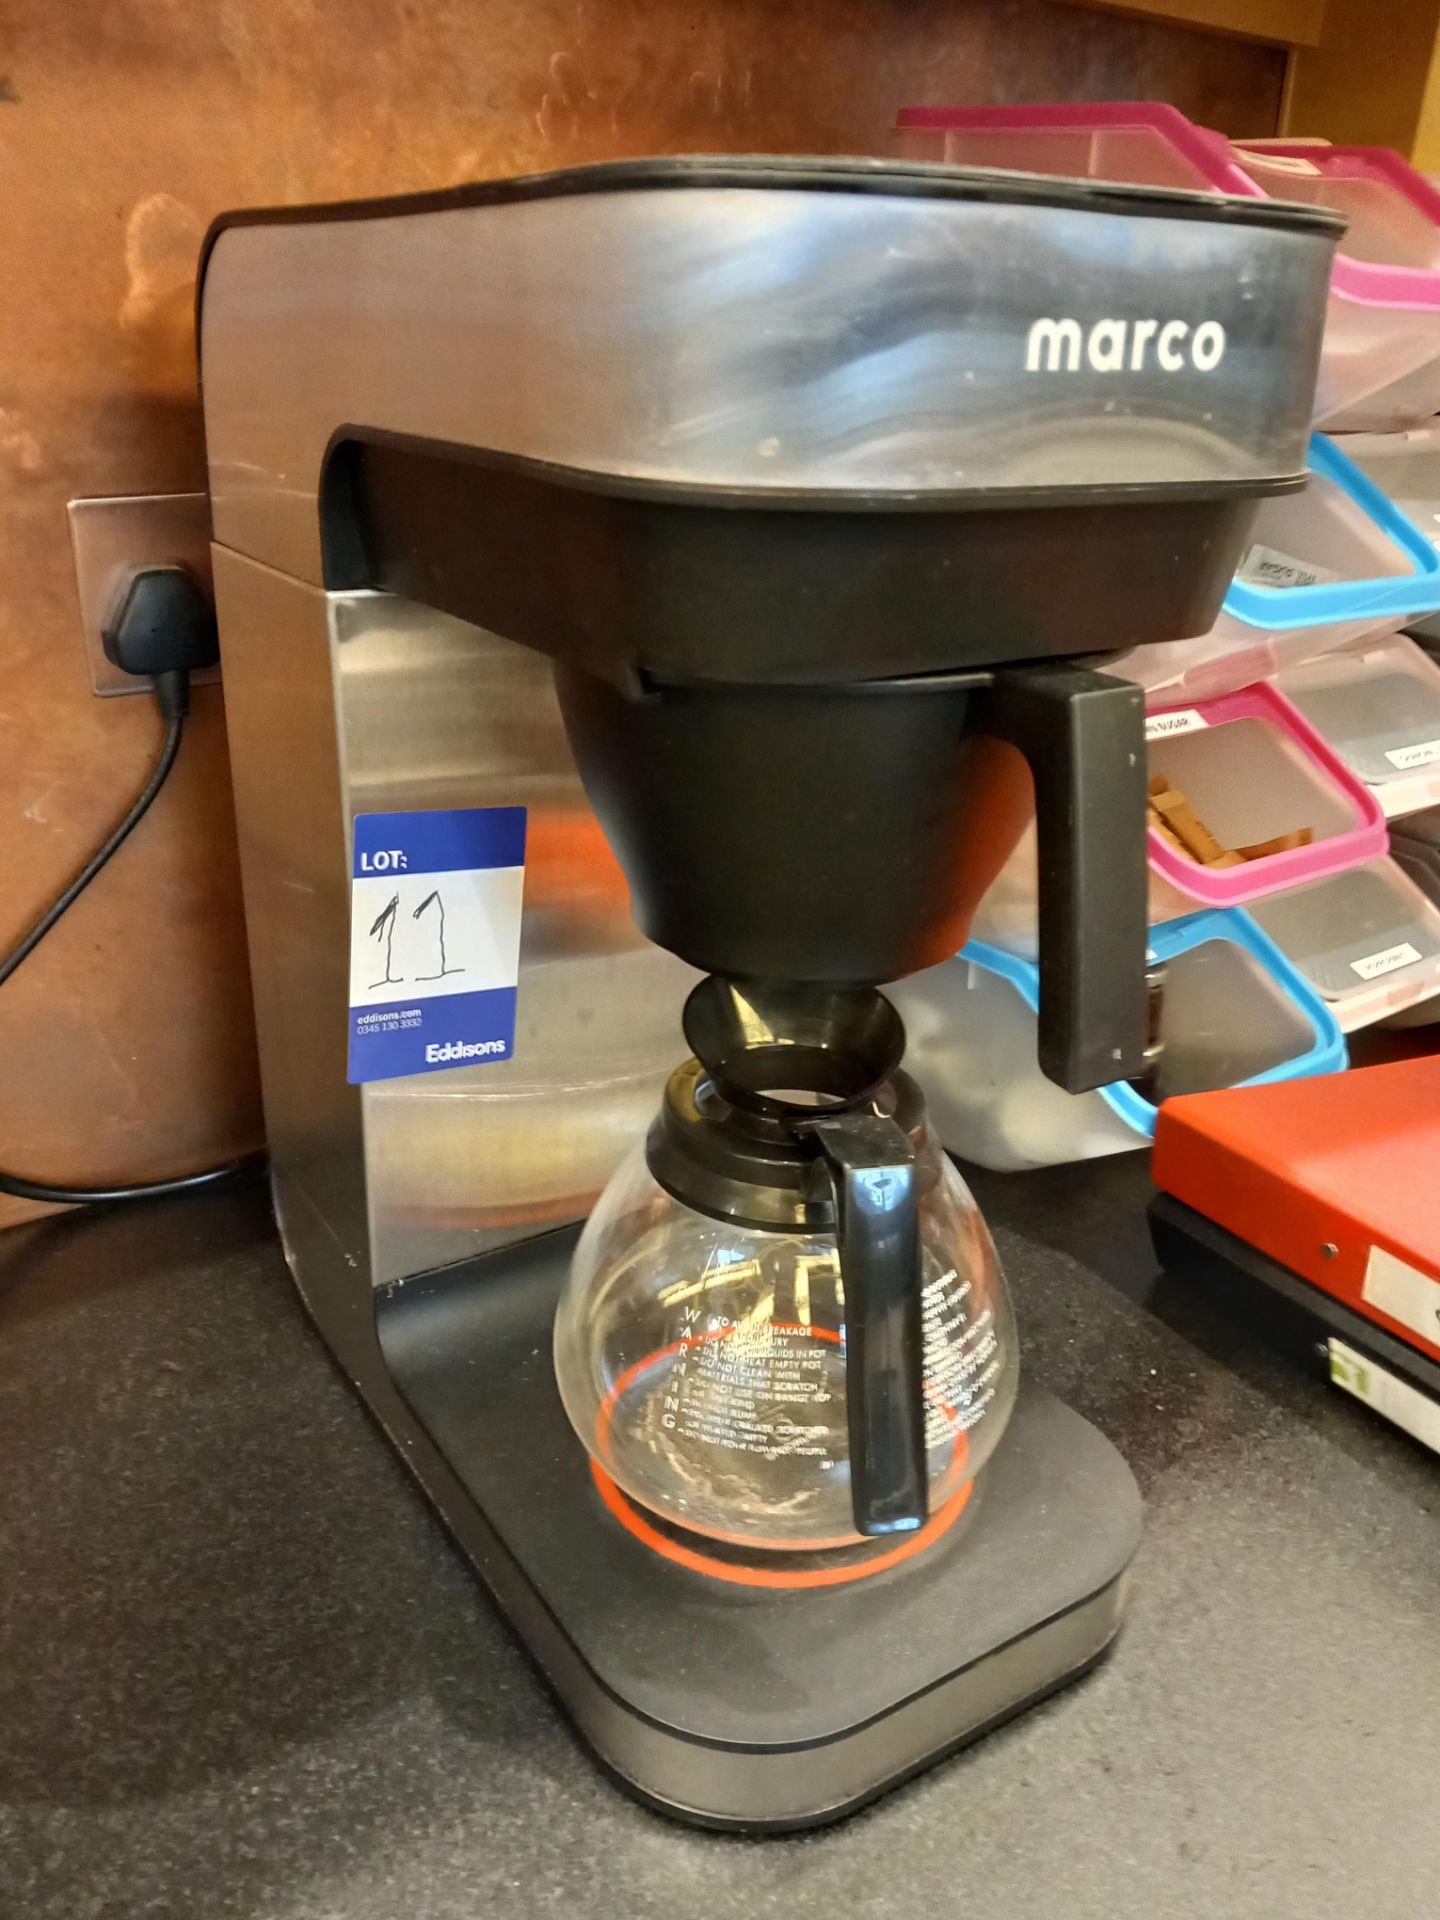 Marco BRU FHSM coffee percolator s/n 0719500506 - Image 2 of 2